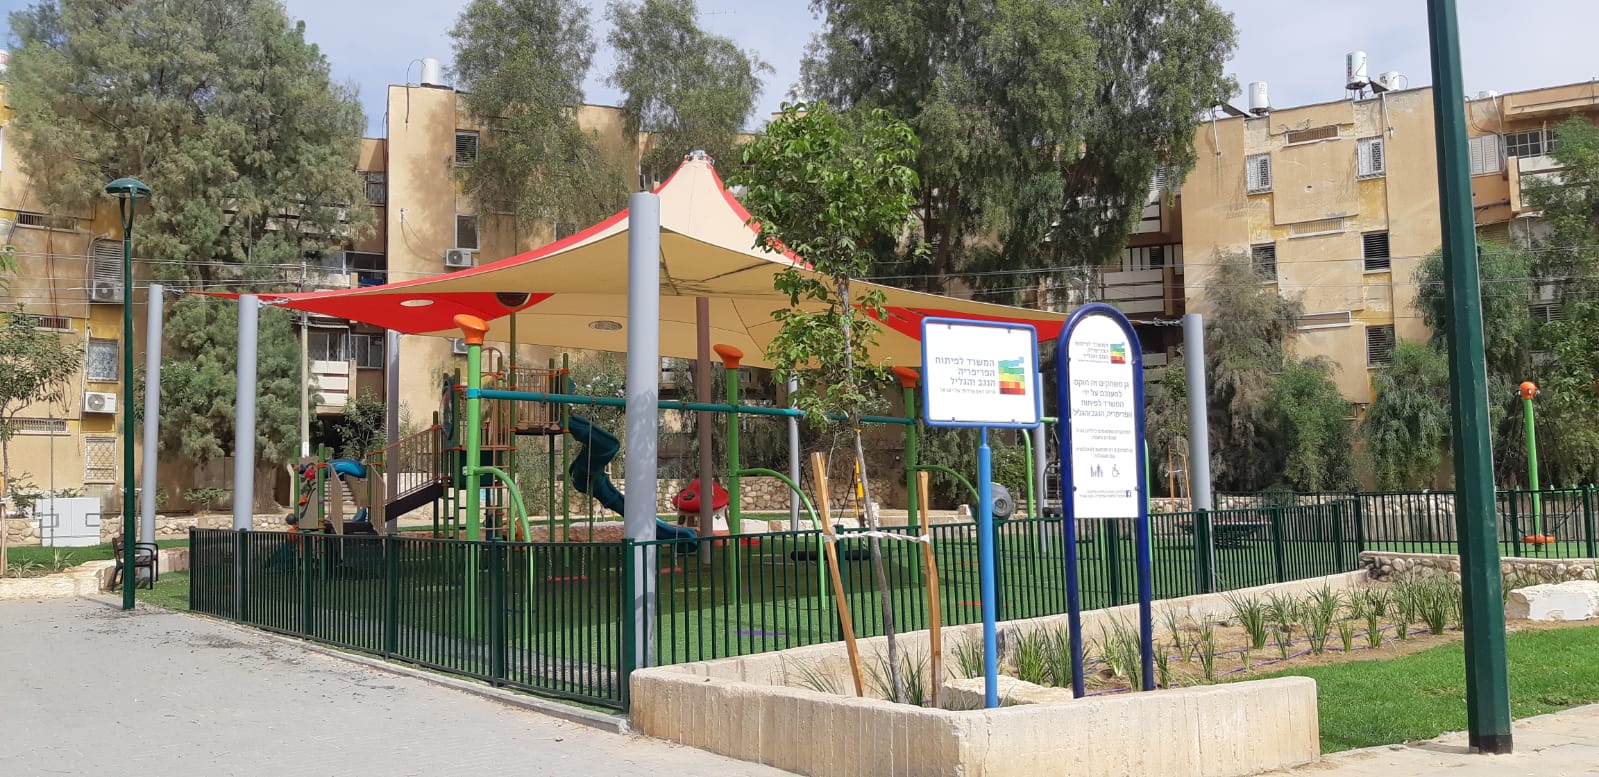 שידרוג גן המשחקים "מבצע עובדה" צילום באדיבות עיריית באר שבע 